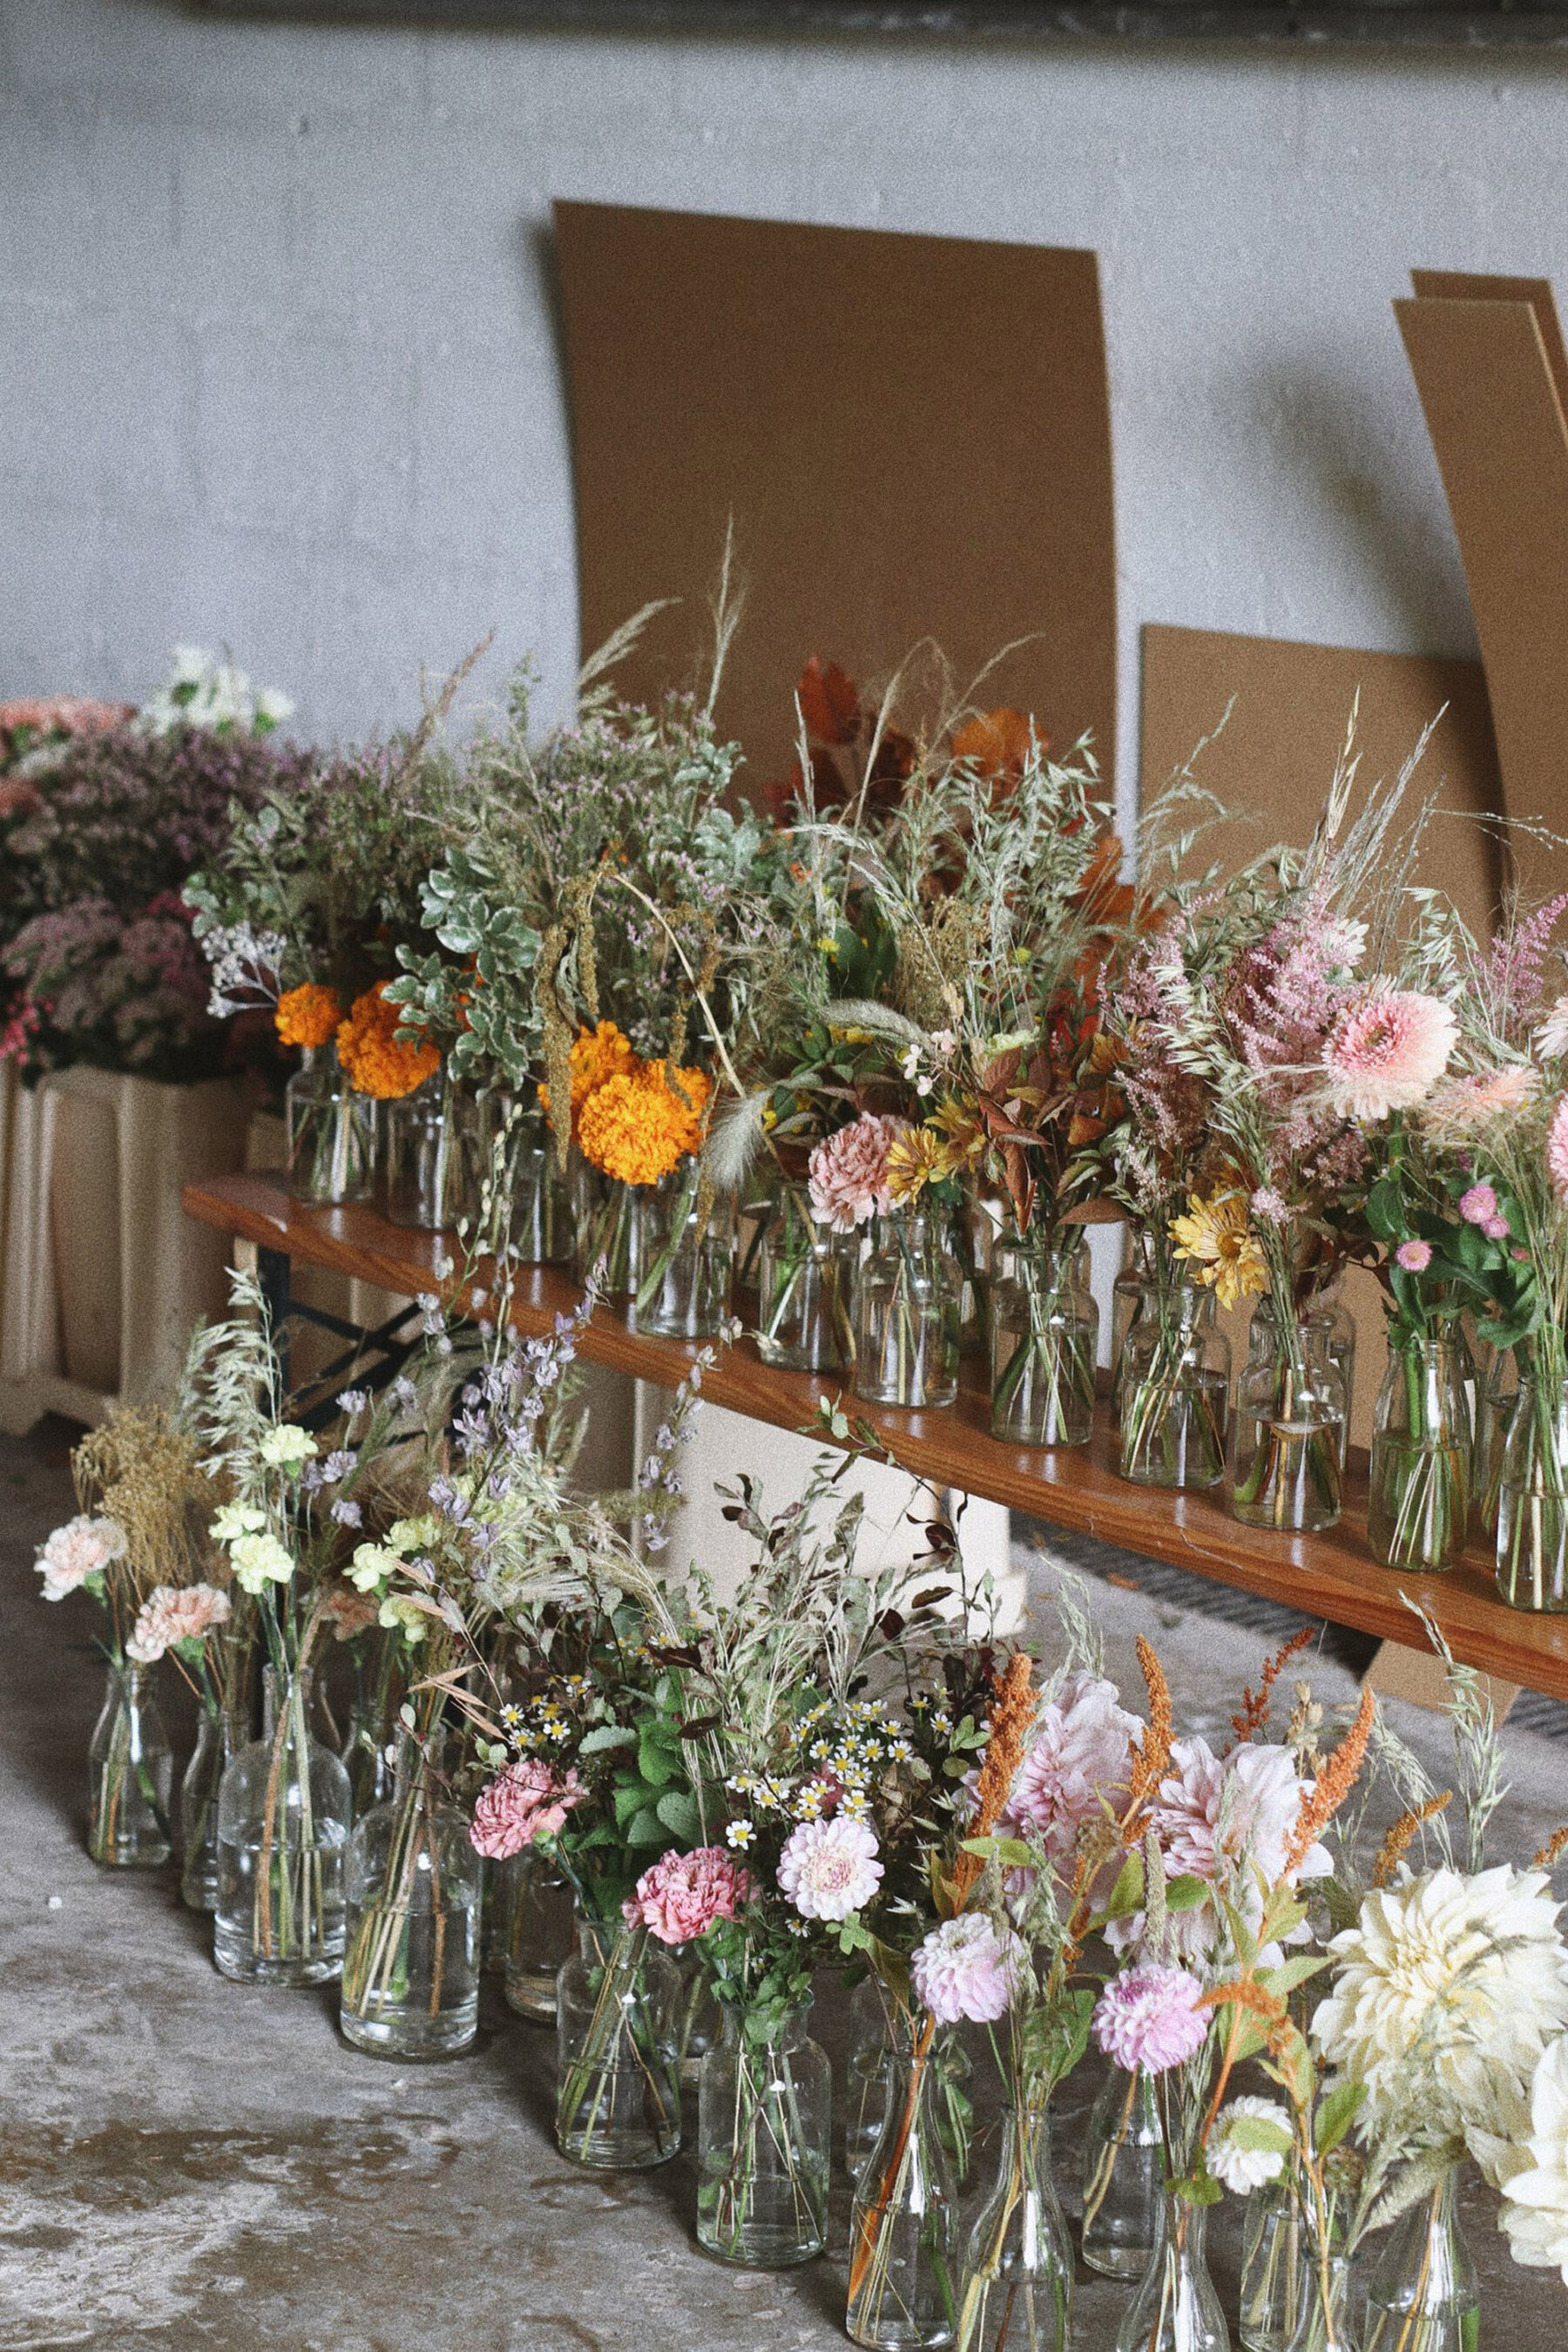 Honour Farm Flowers - flowers in glass vases